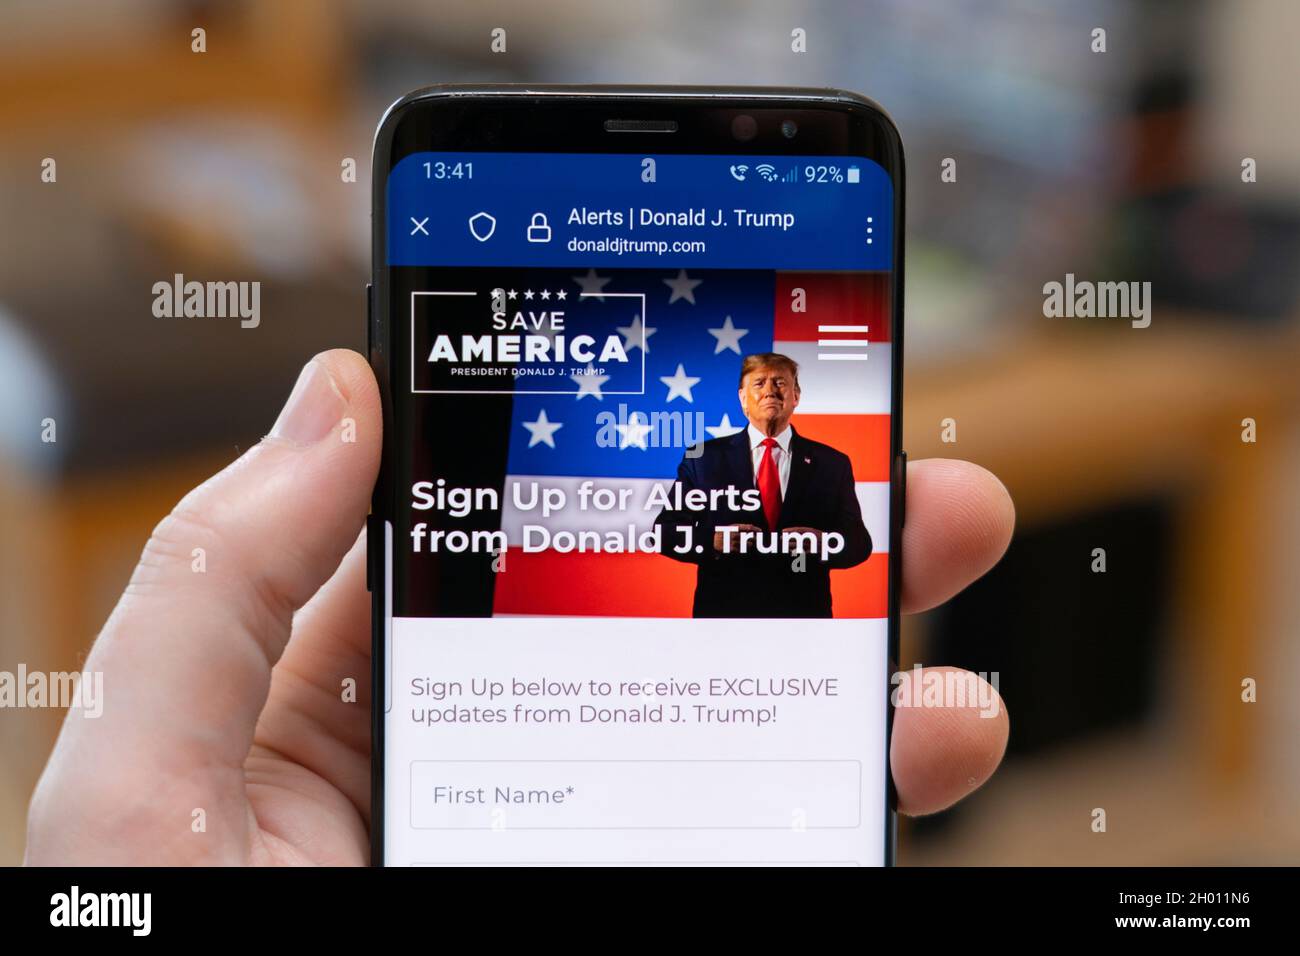 Mano dell'uomo che tiene uno smartphone che mostra il sito web di Donald J. Trump di breve durata che ora si reindirizza a una pagina di riempimento chiedendo agli utenti di iscriversi per gli avvisi Foto Stock